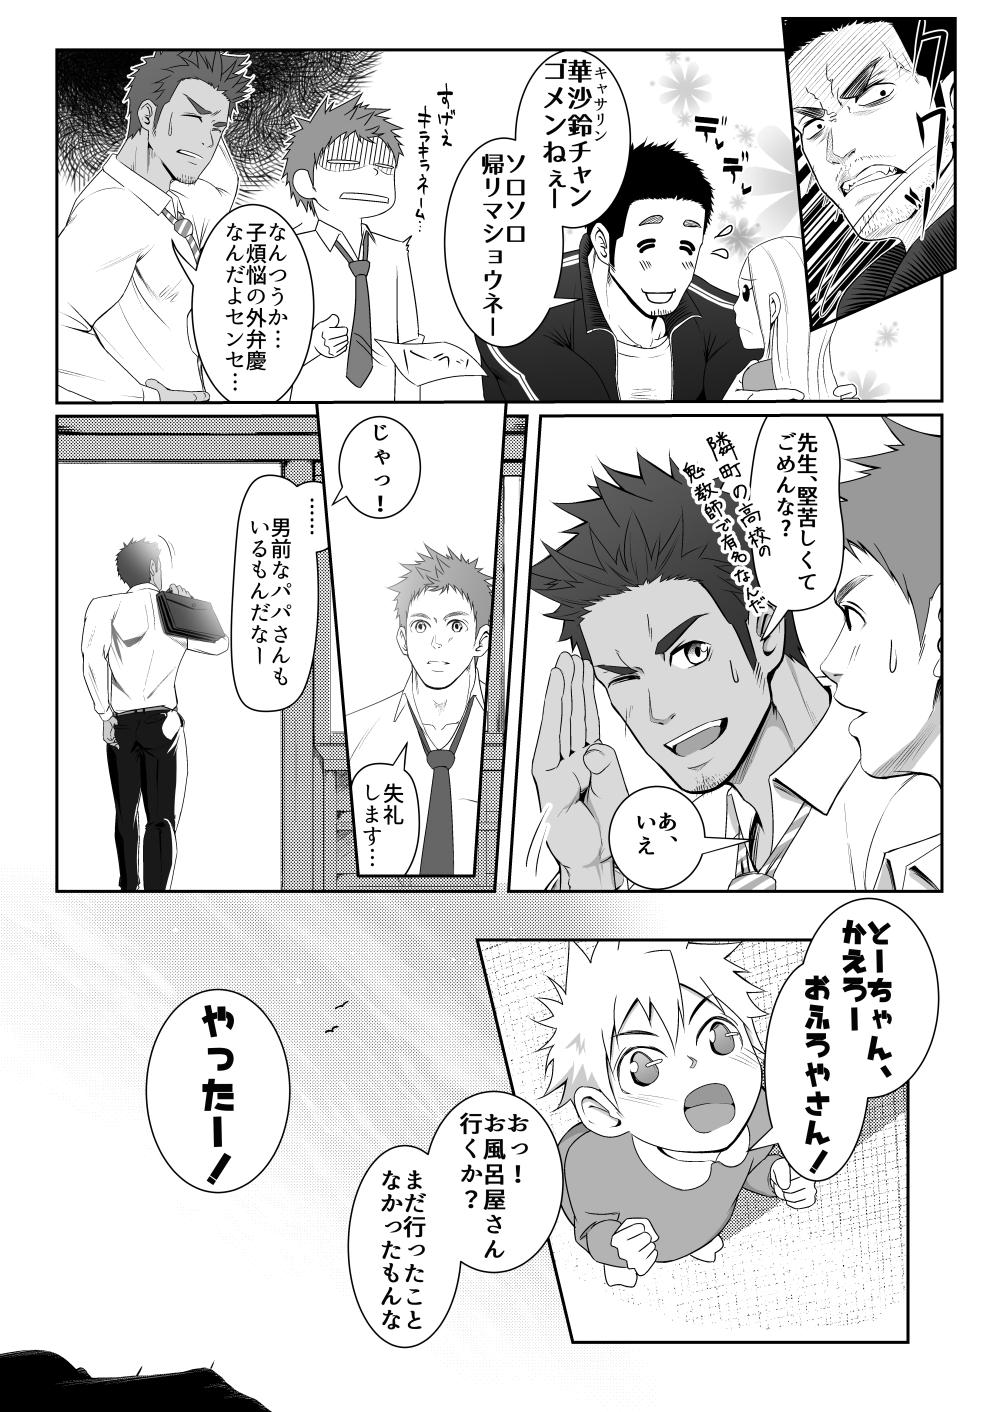 Boys Papa-kai one count Sexteen - Page 6